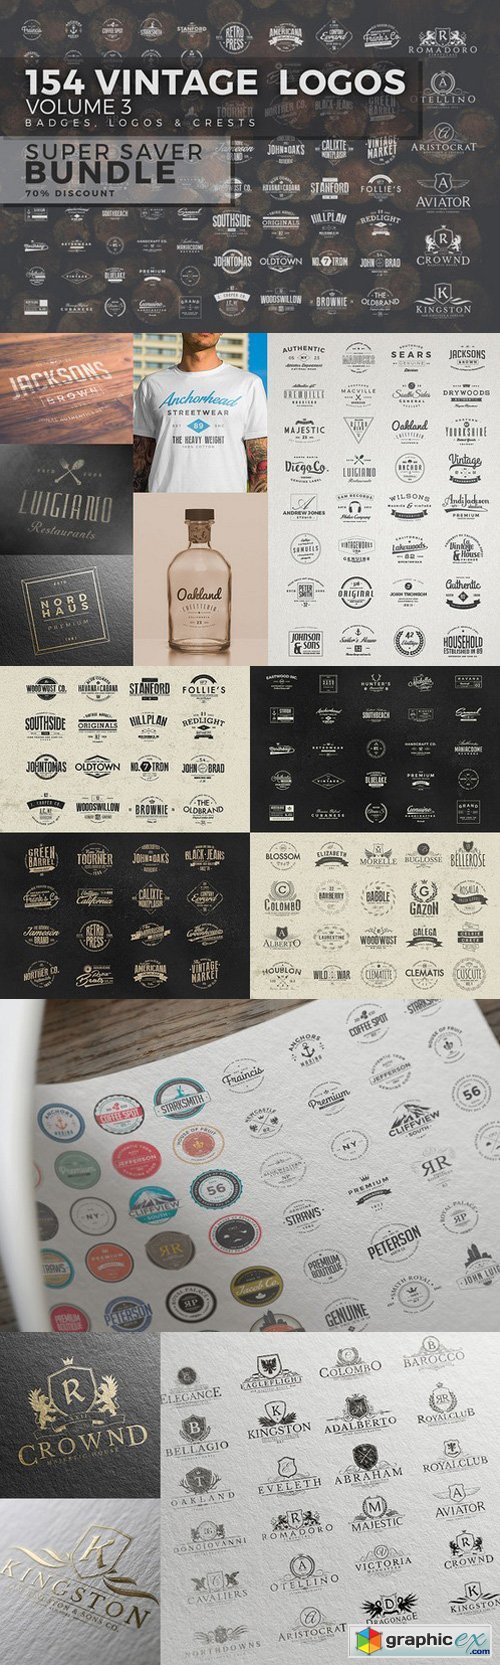 154 Vintage Logos Bundle Vol.3